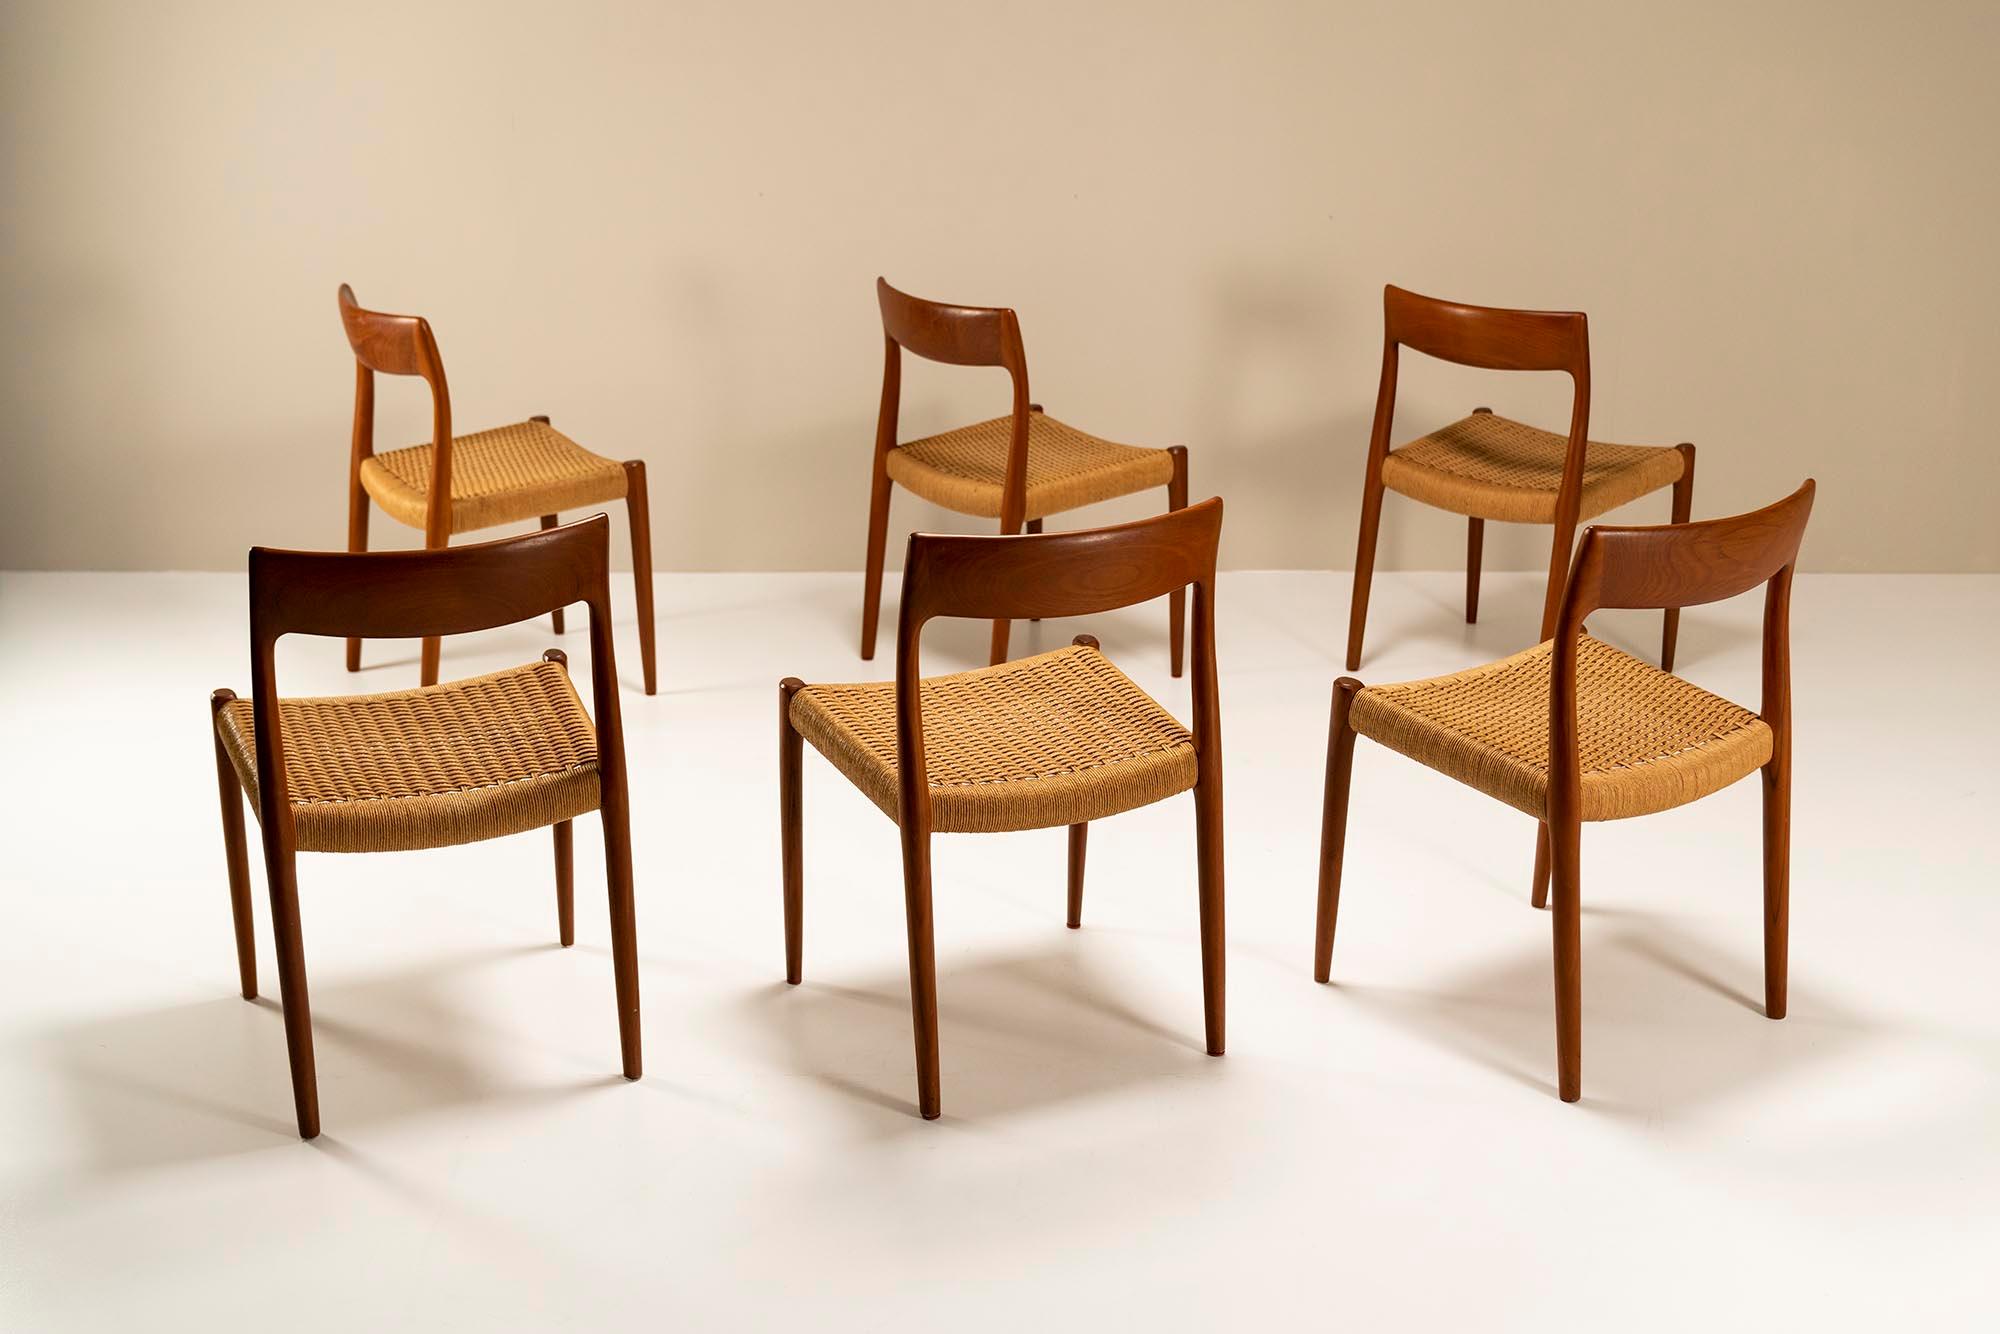 Ein schönes Set von sechs legendären Esstischstühlen des dänischen Designers Niels Otto Møller aus dem Jahr 1959. Scheinbar einfach, aber sehr raffiniert von Meisterhandwerkern der J.L Møbelfabrik gefertigt. Die Verbindungen, aus denen die Teile